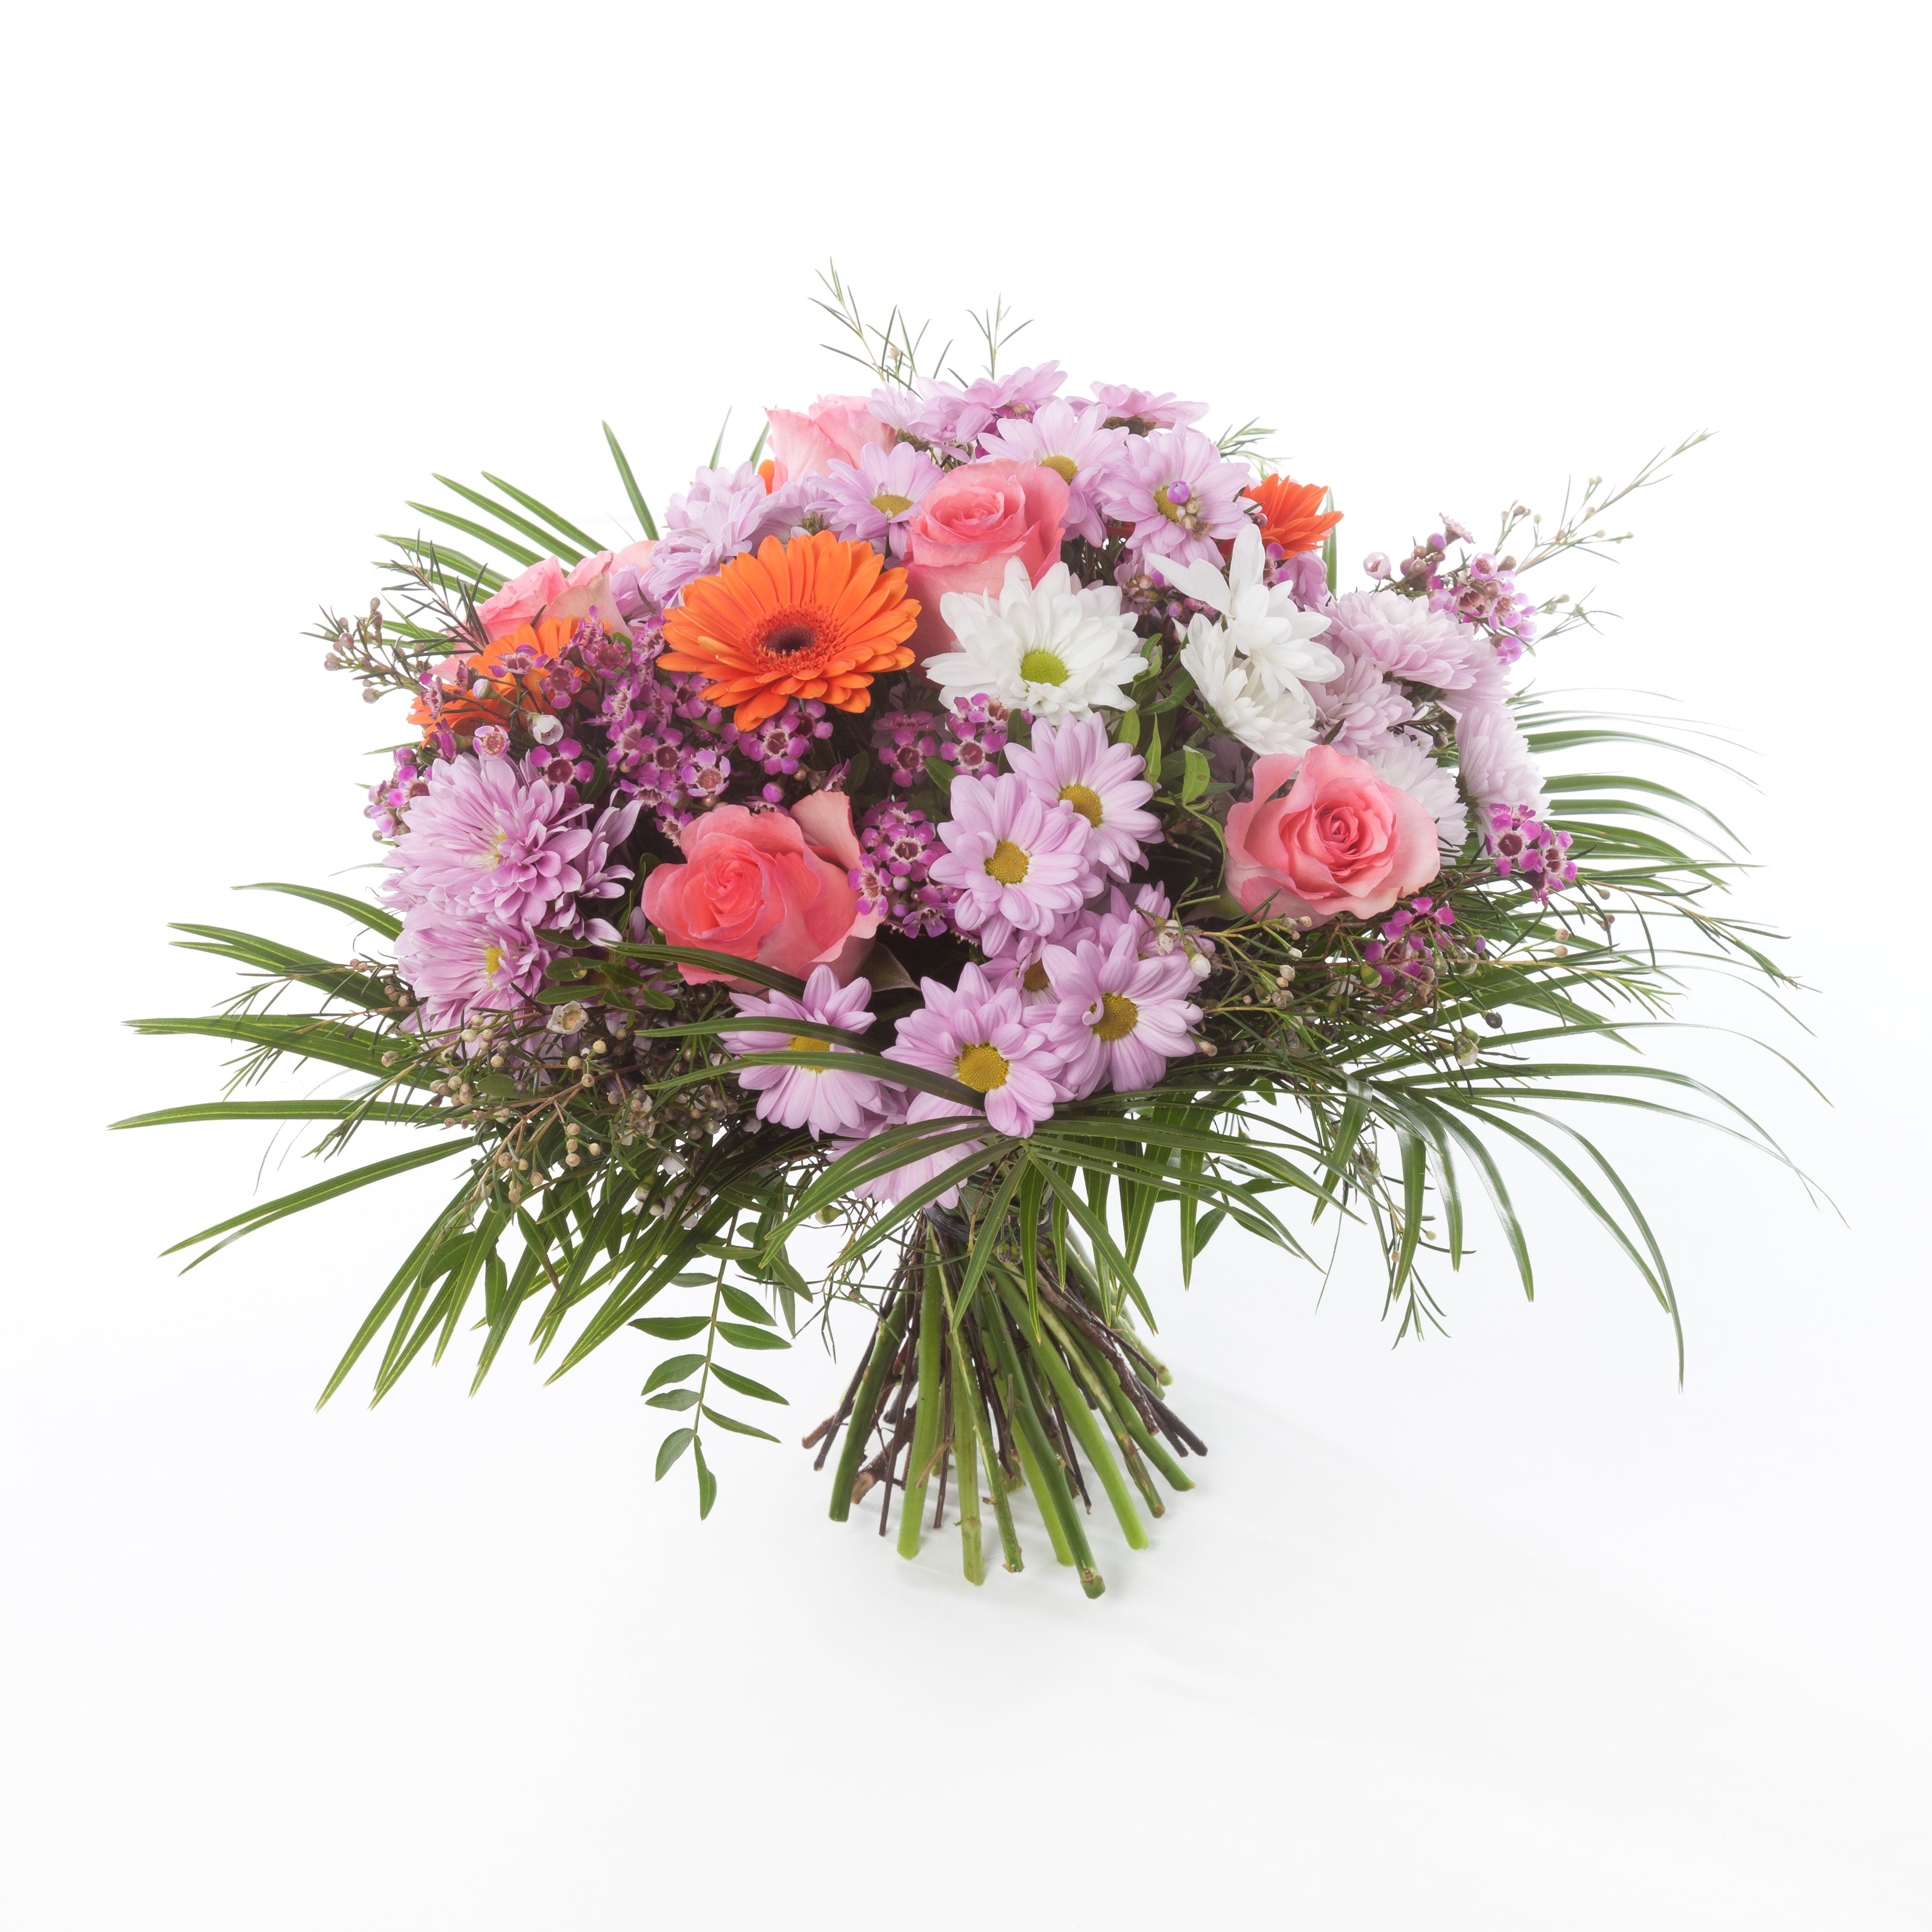 Florist Choice 7 - Floramor 